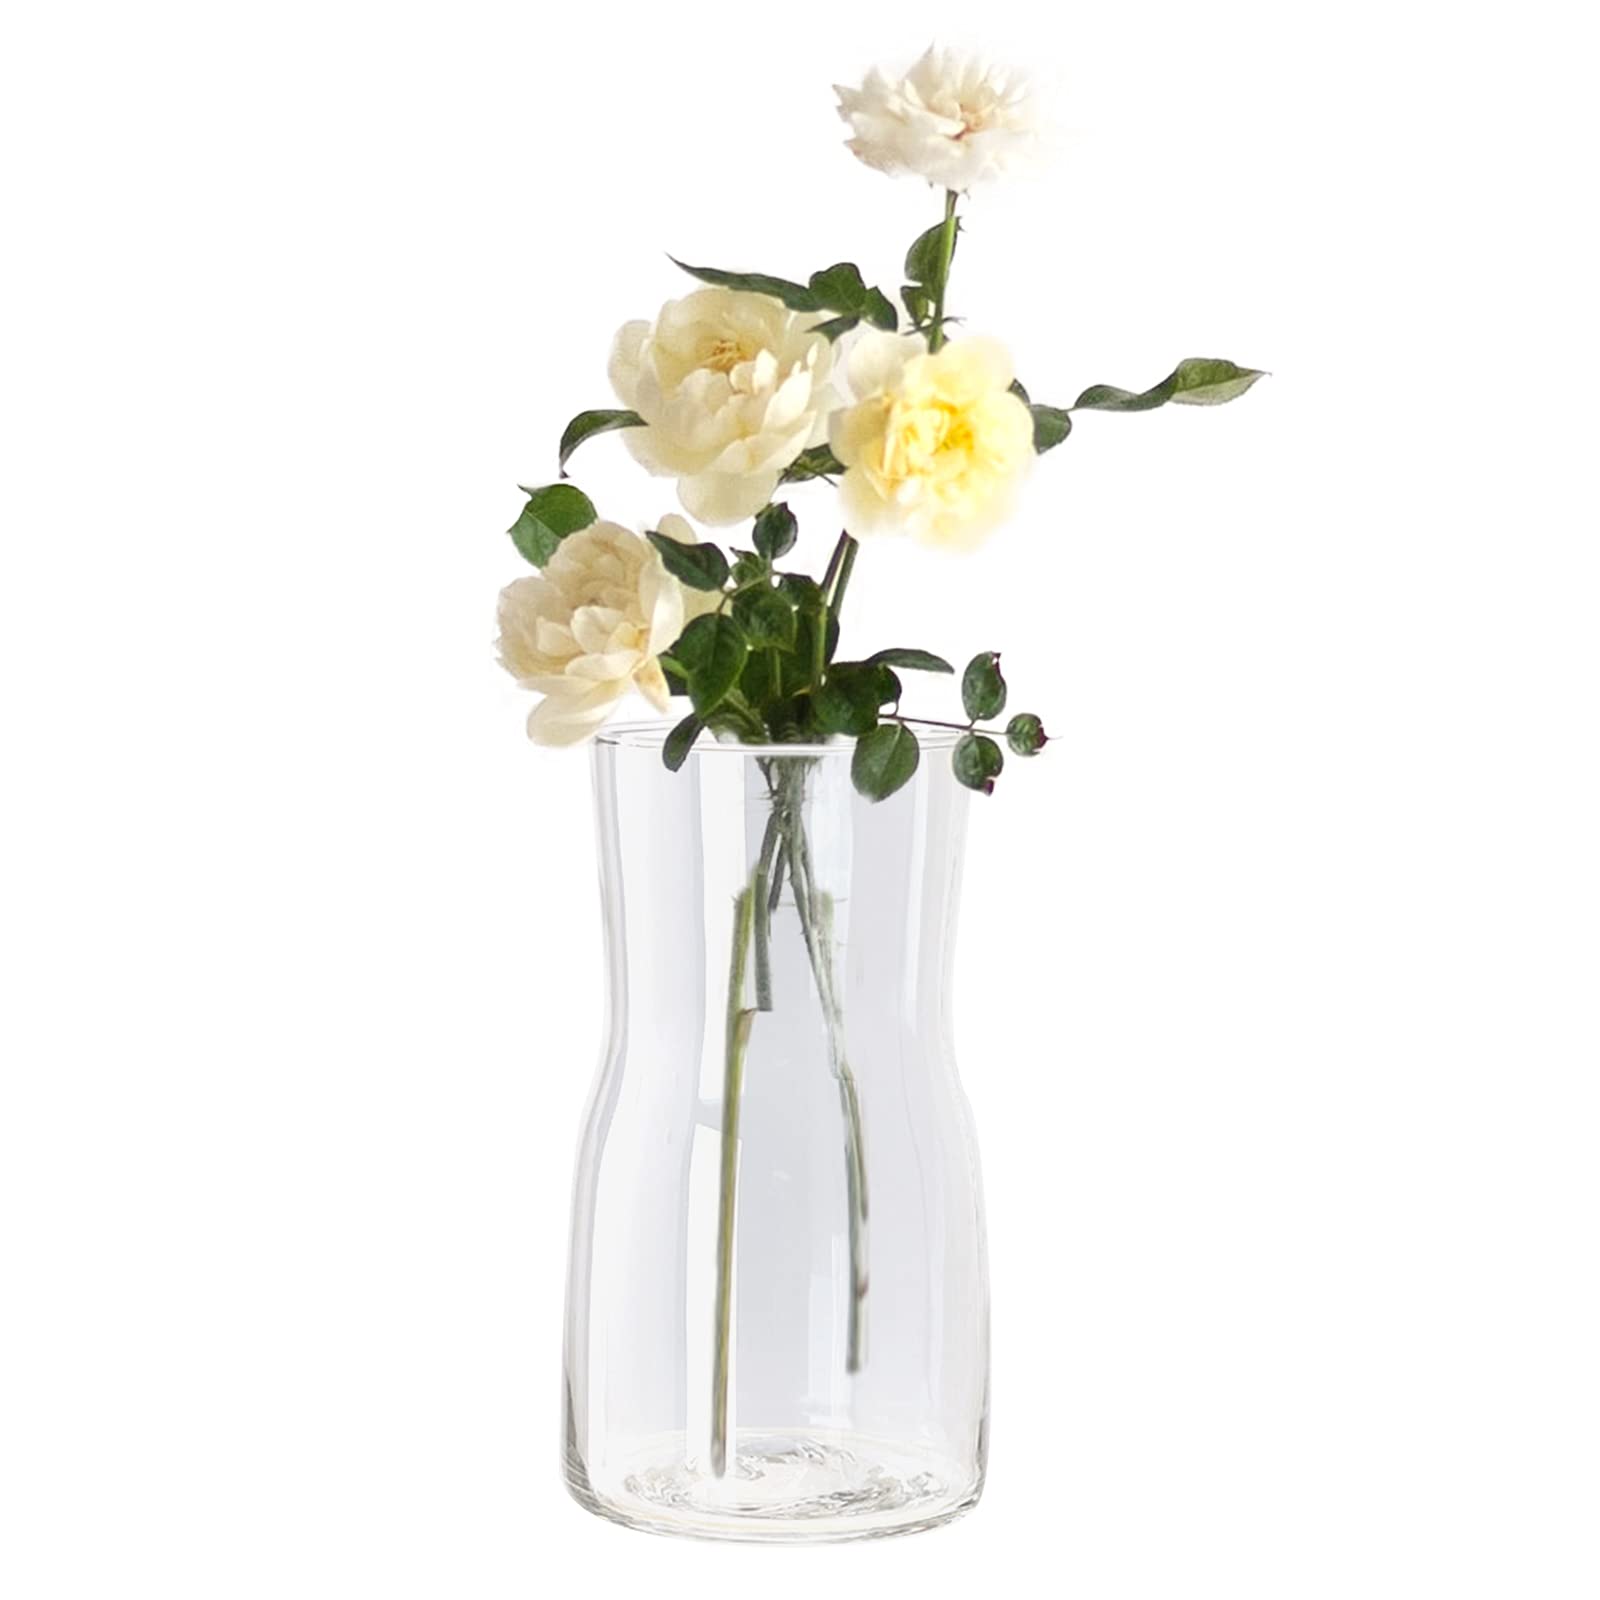 en ligne vase verre transparent vase transparent Vase à fleurs vase jonquille petits Vases en verre pour fleurs grands Vases en verre taillé pour fleurs 17 cm / 6,69 pouces de hauteur GPirQPT8X en vente